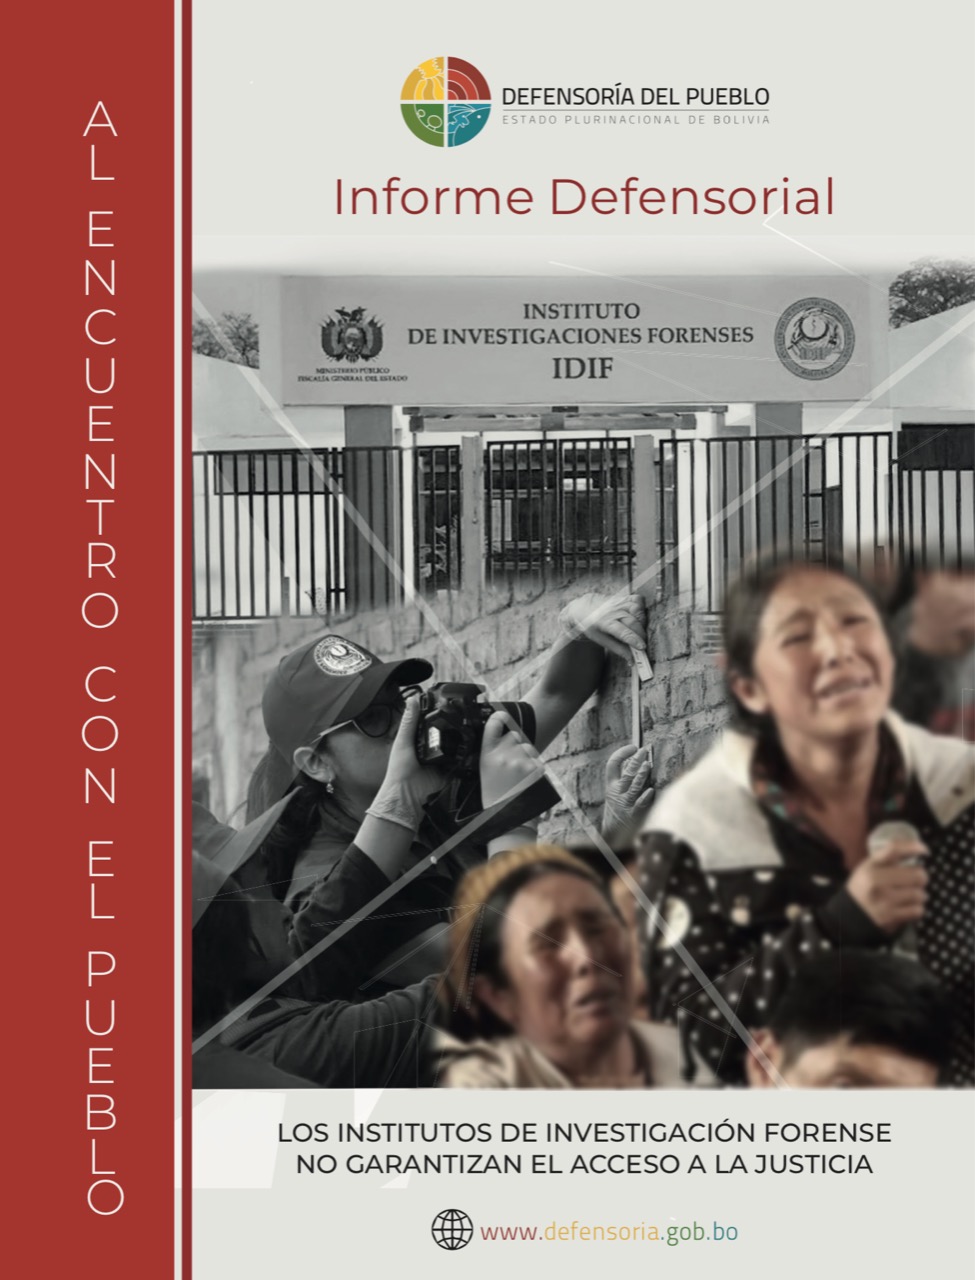 Defensora ratifica que los IDIF enfrentan deficiencias que limitan a las víctimas el acceso a la justicia